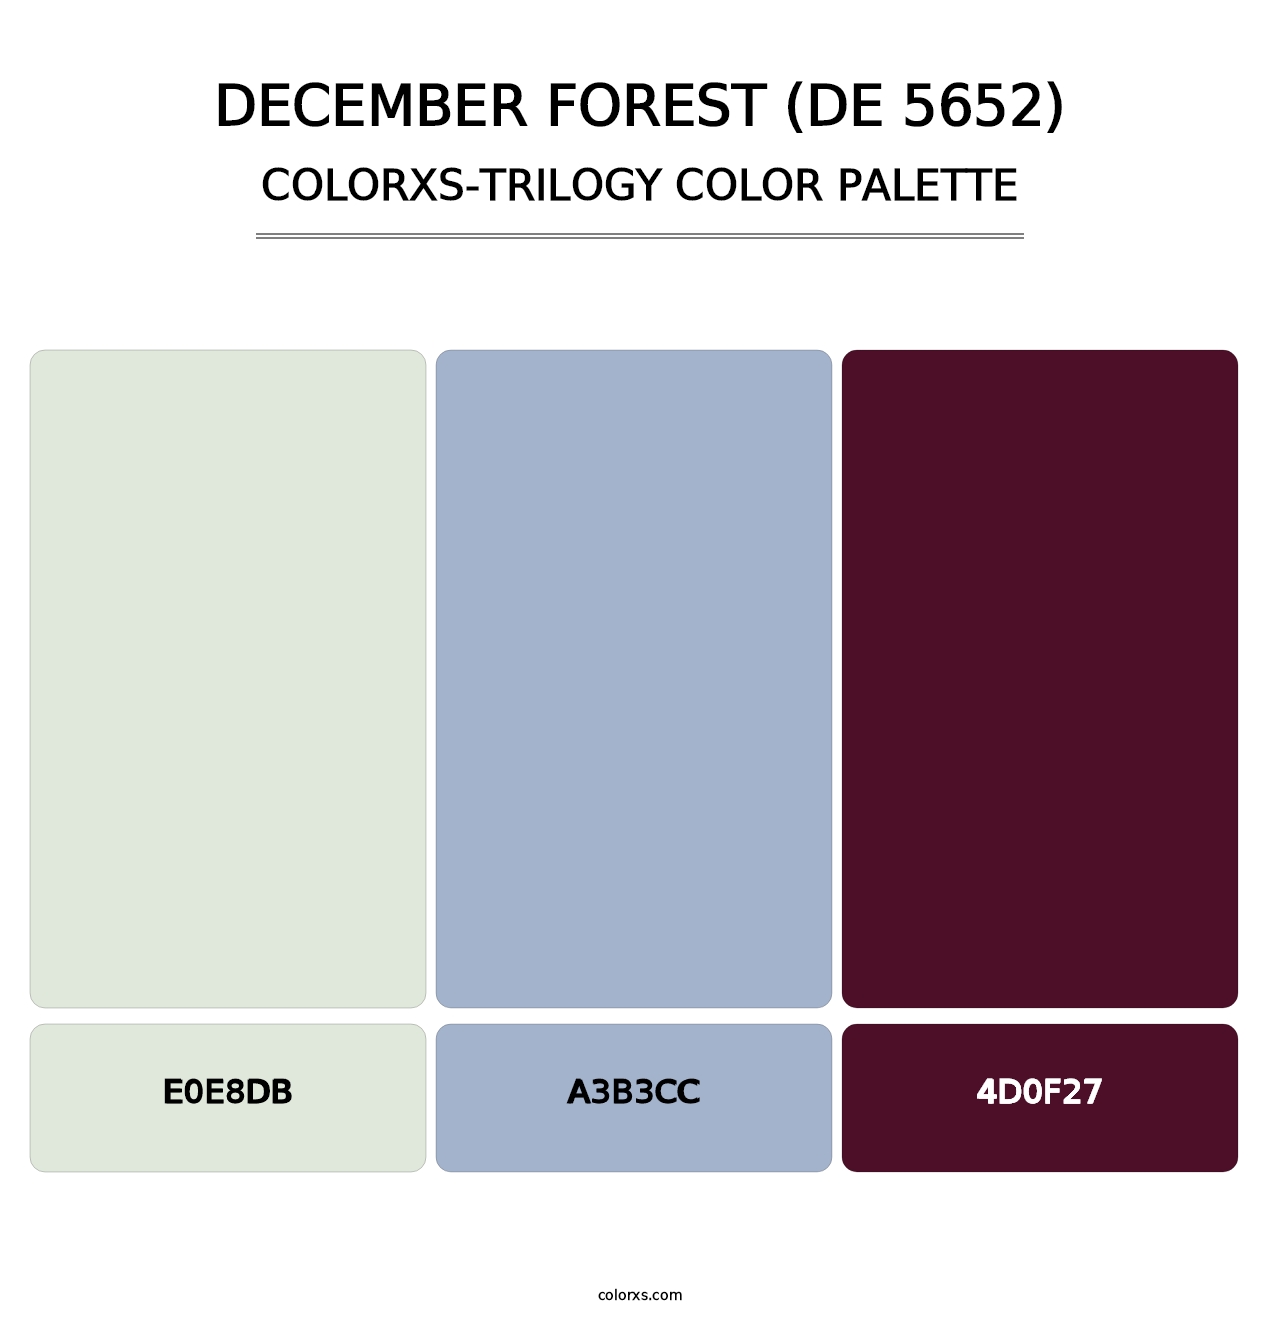 December Forest (DE 5652) - Colorxs Trilogy Palette